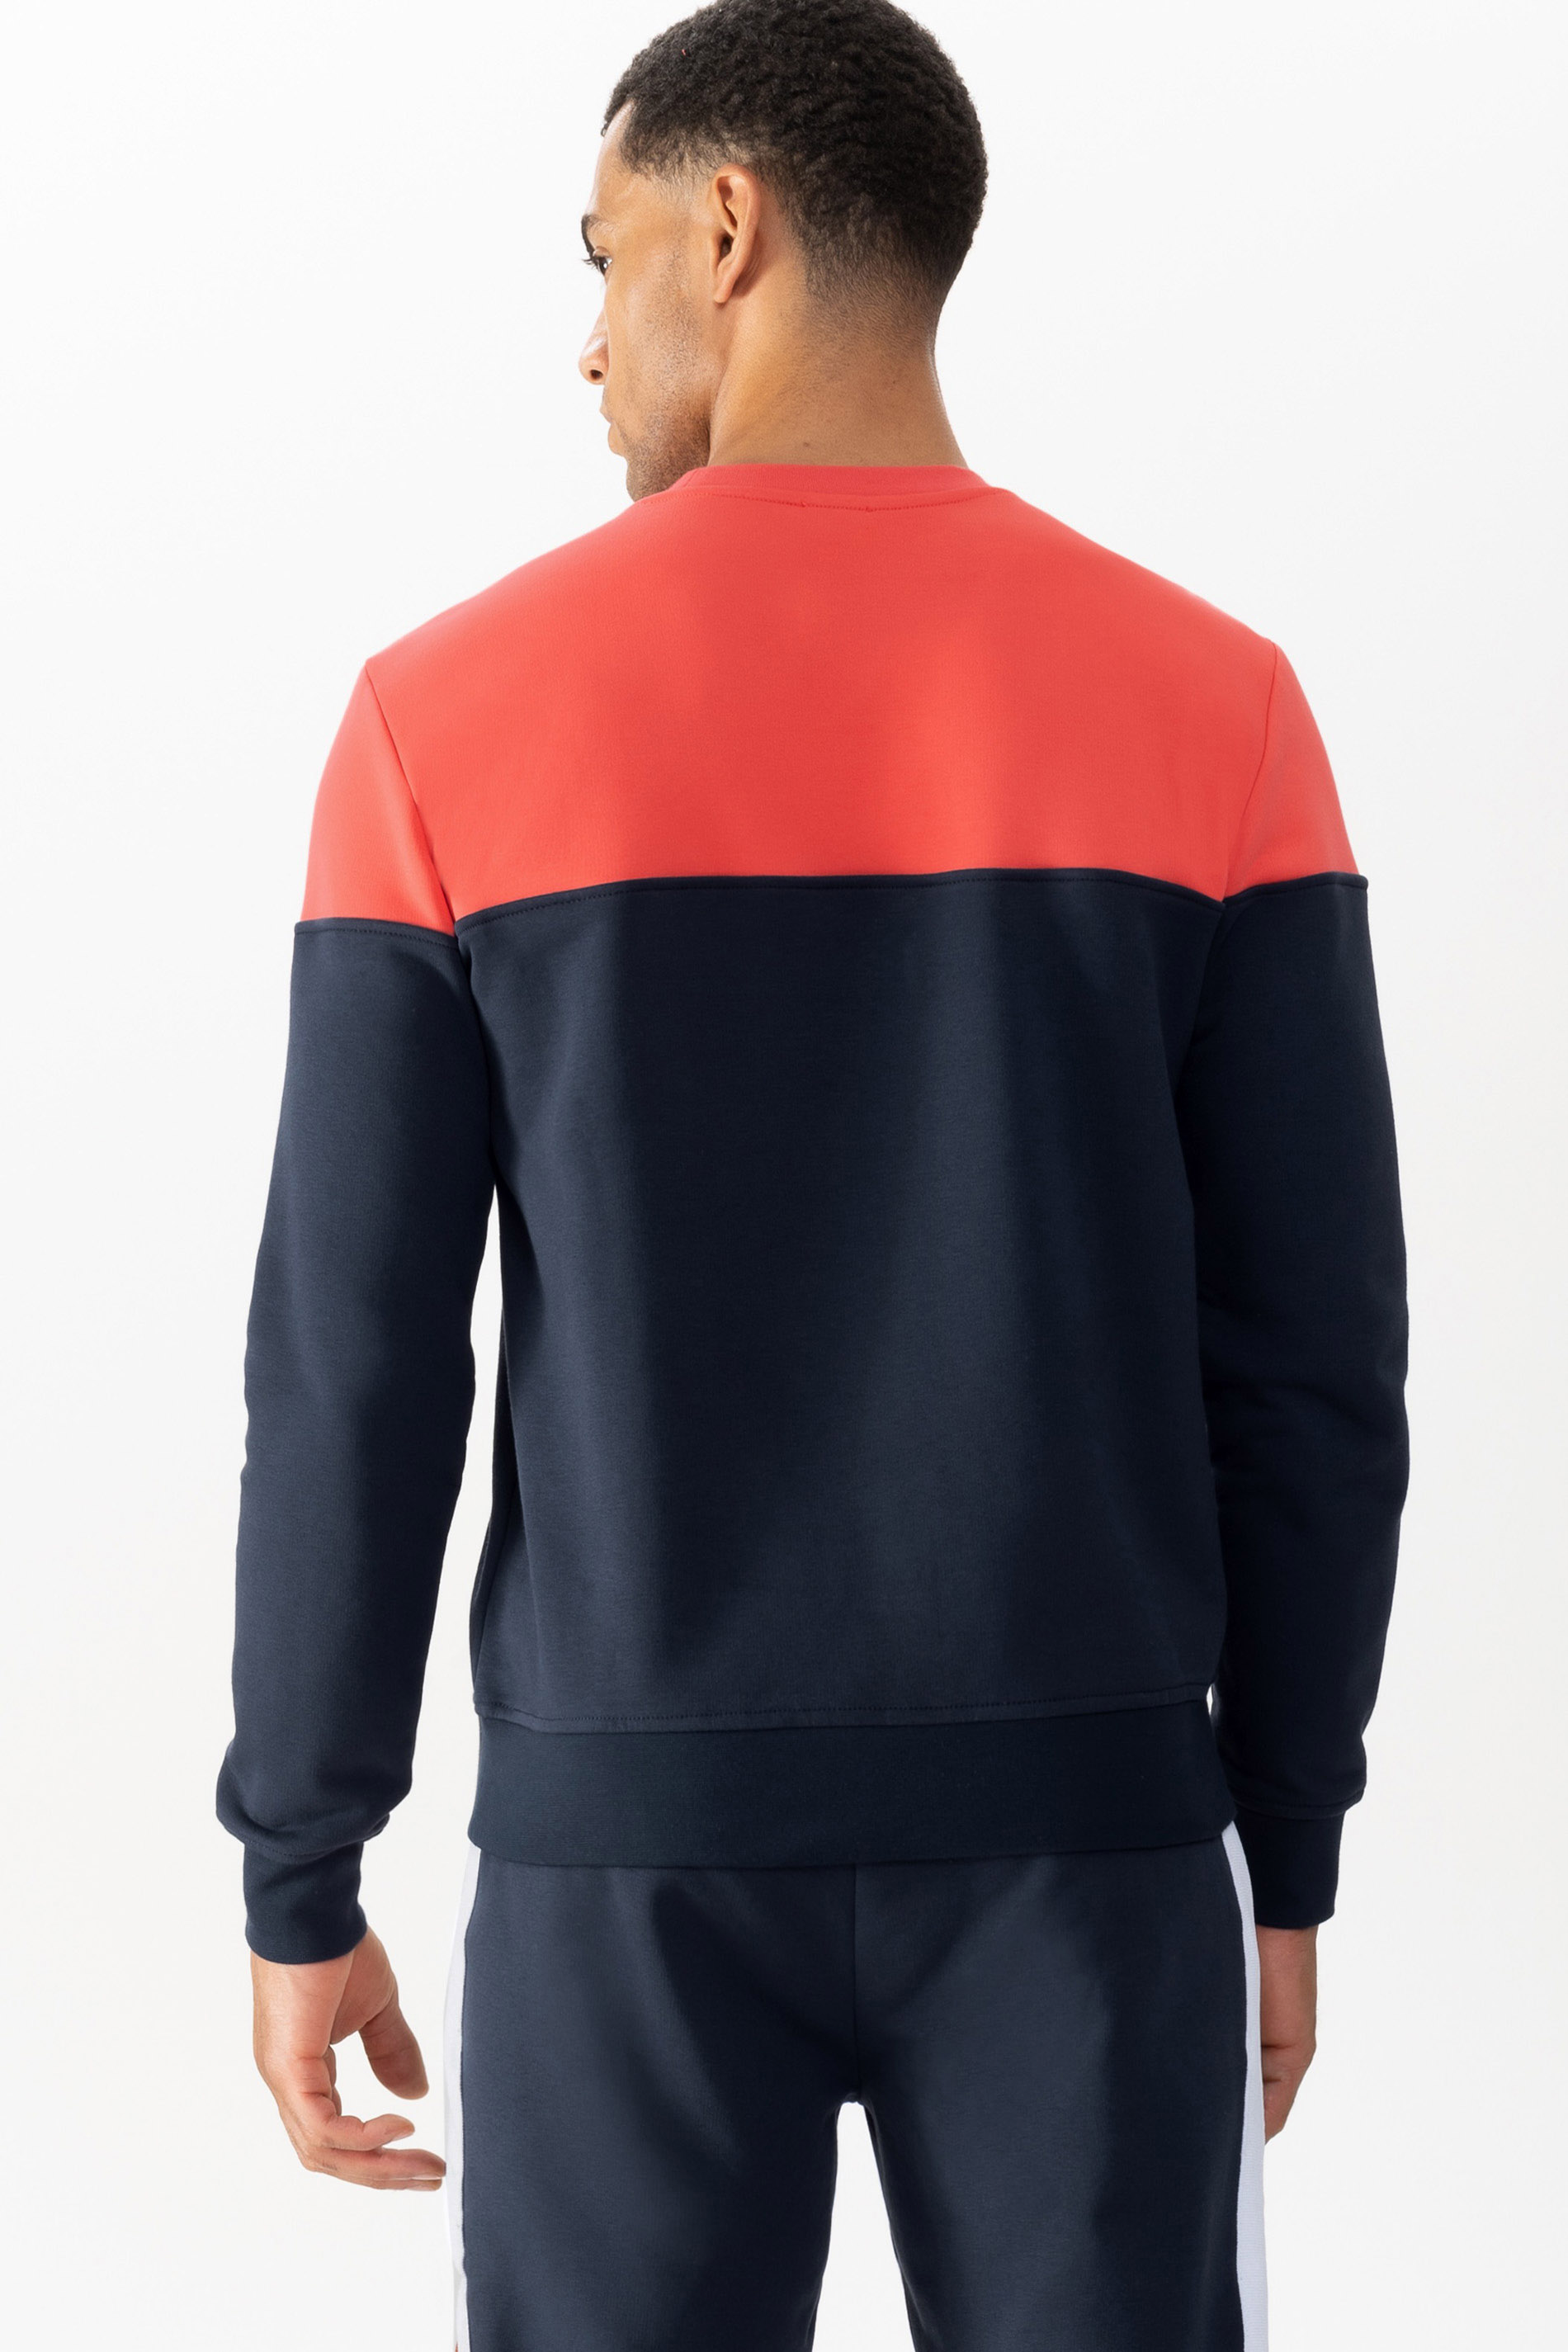 Sweatshirt Serie Lido Rear View | mey®